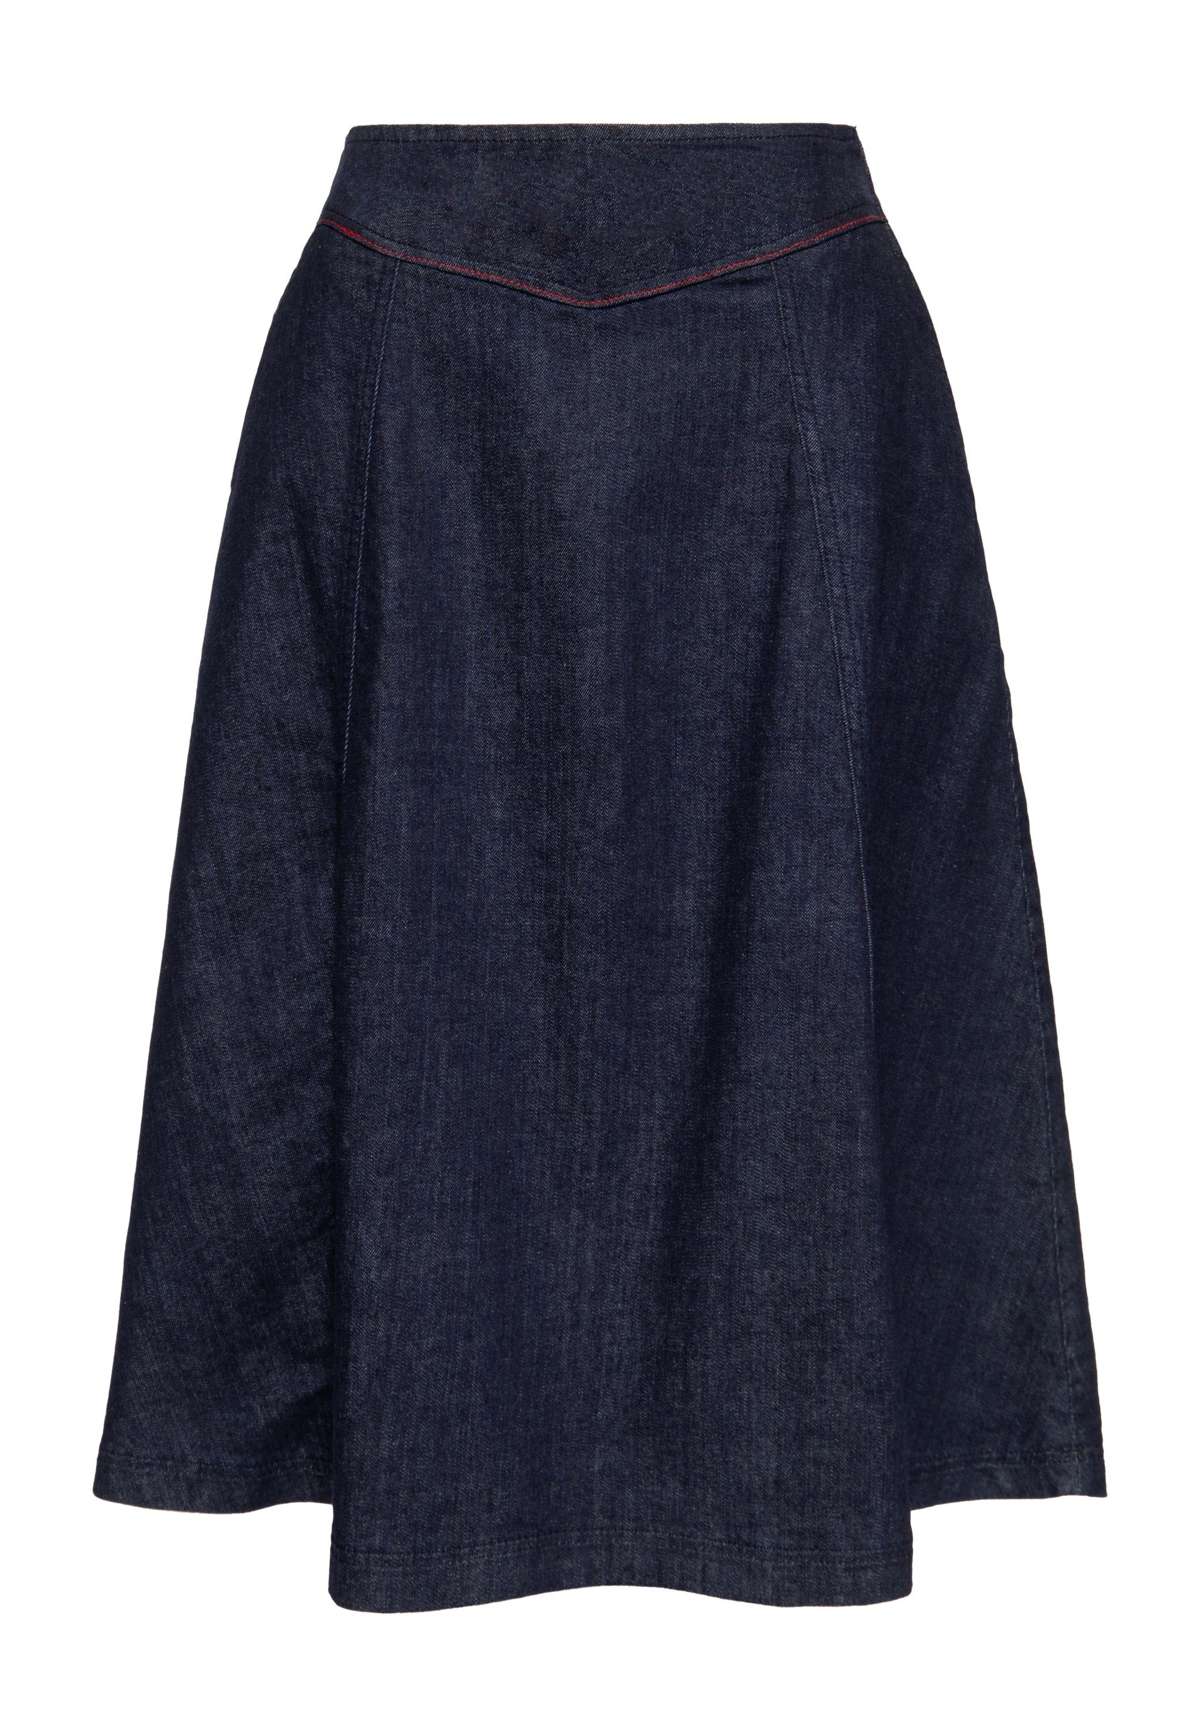 Джинсовая юбка в стиле вестерн 50-х годов